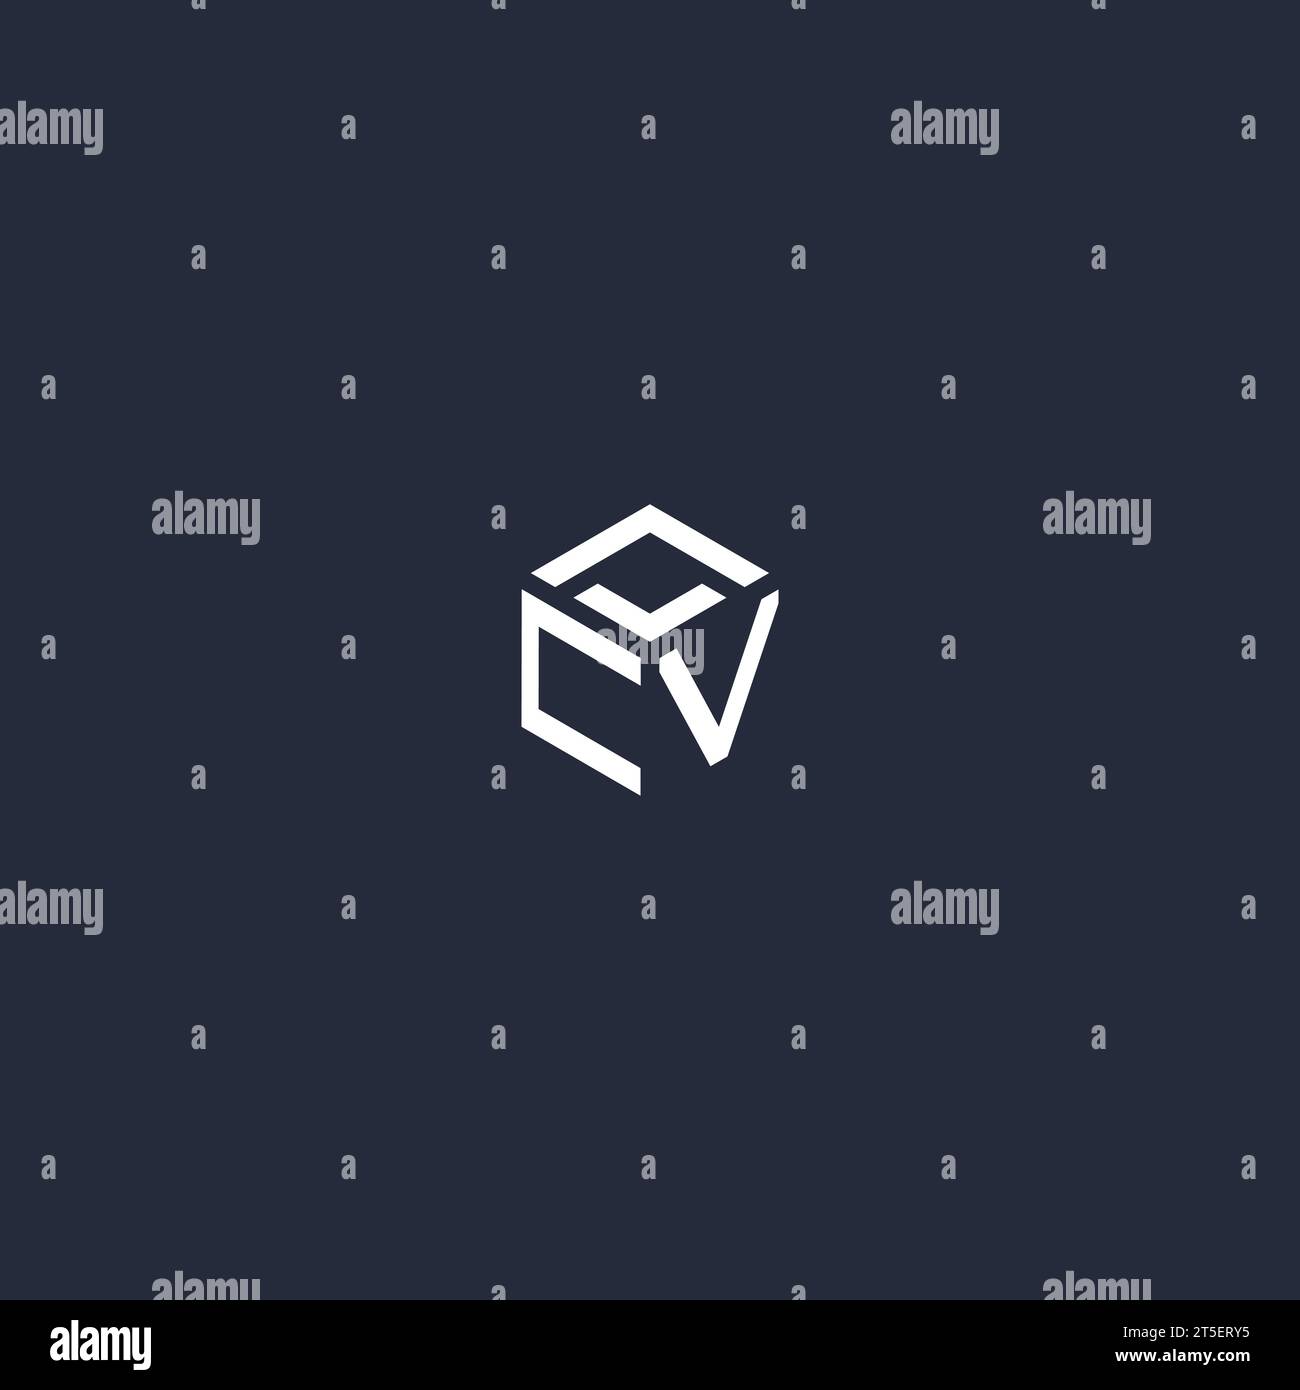 CV initial hexagon logo design inspiration Stock Vector